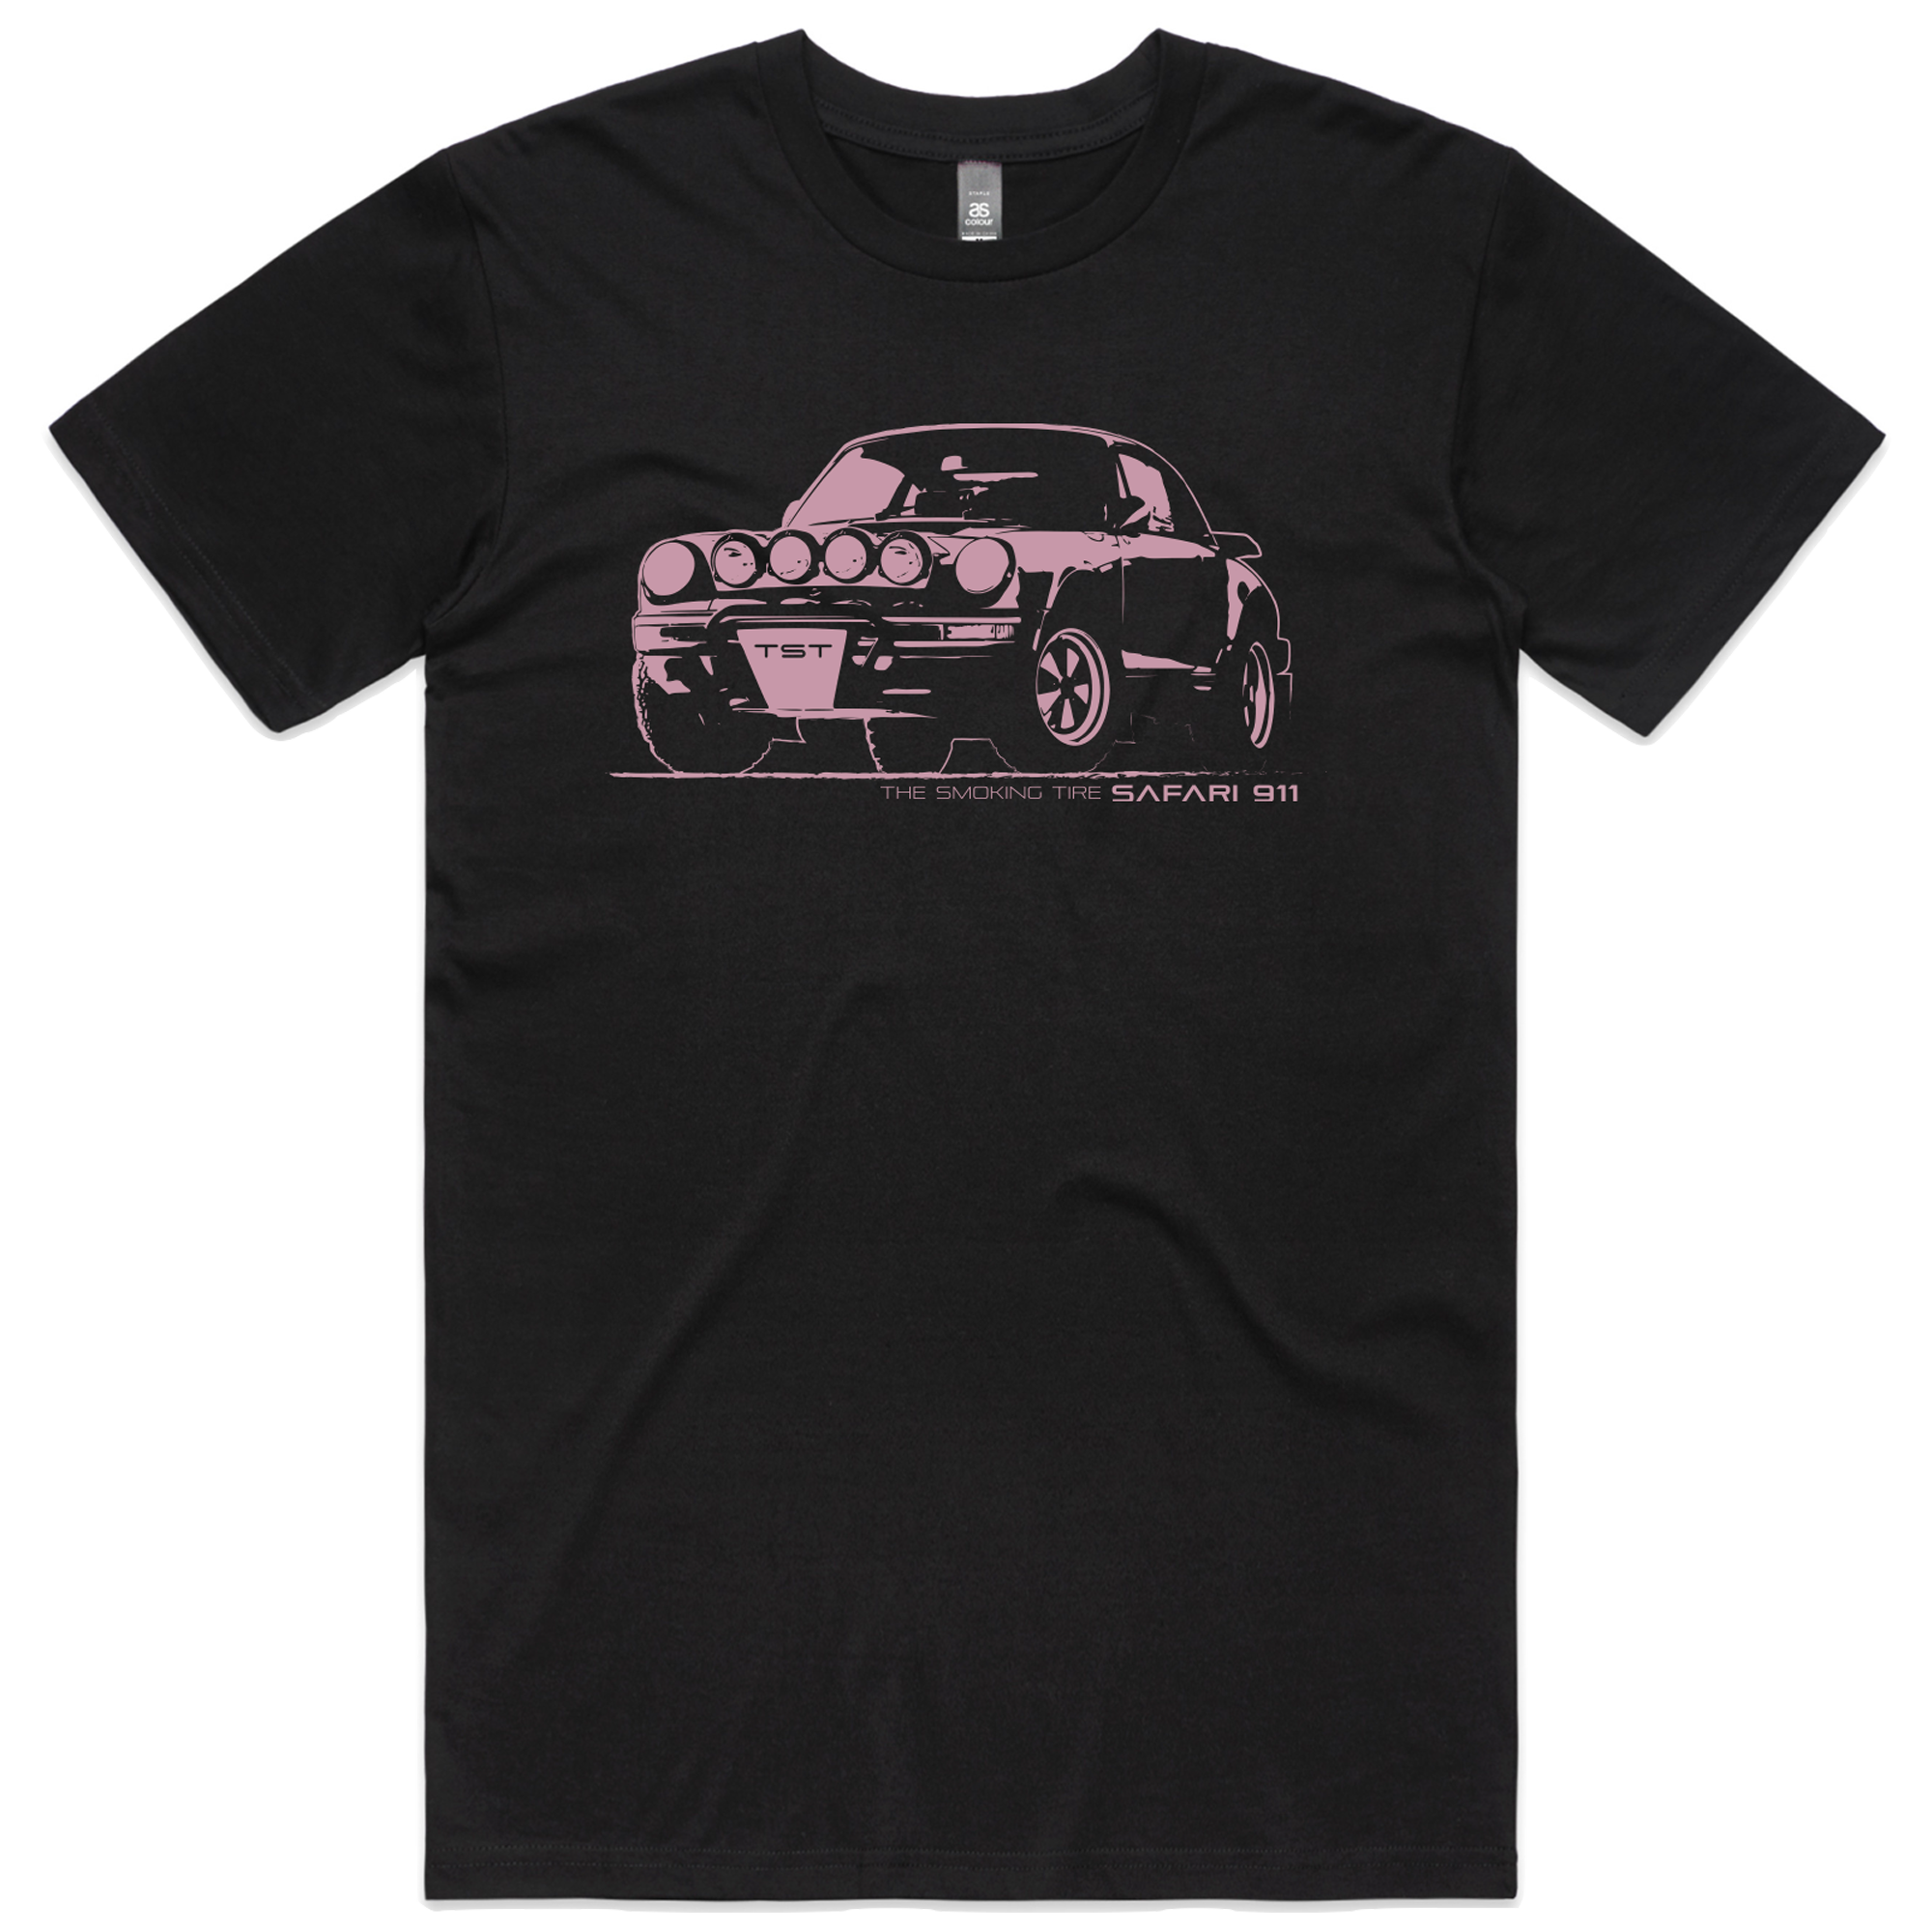 Safari 911 T-Shirt